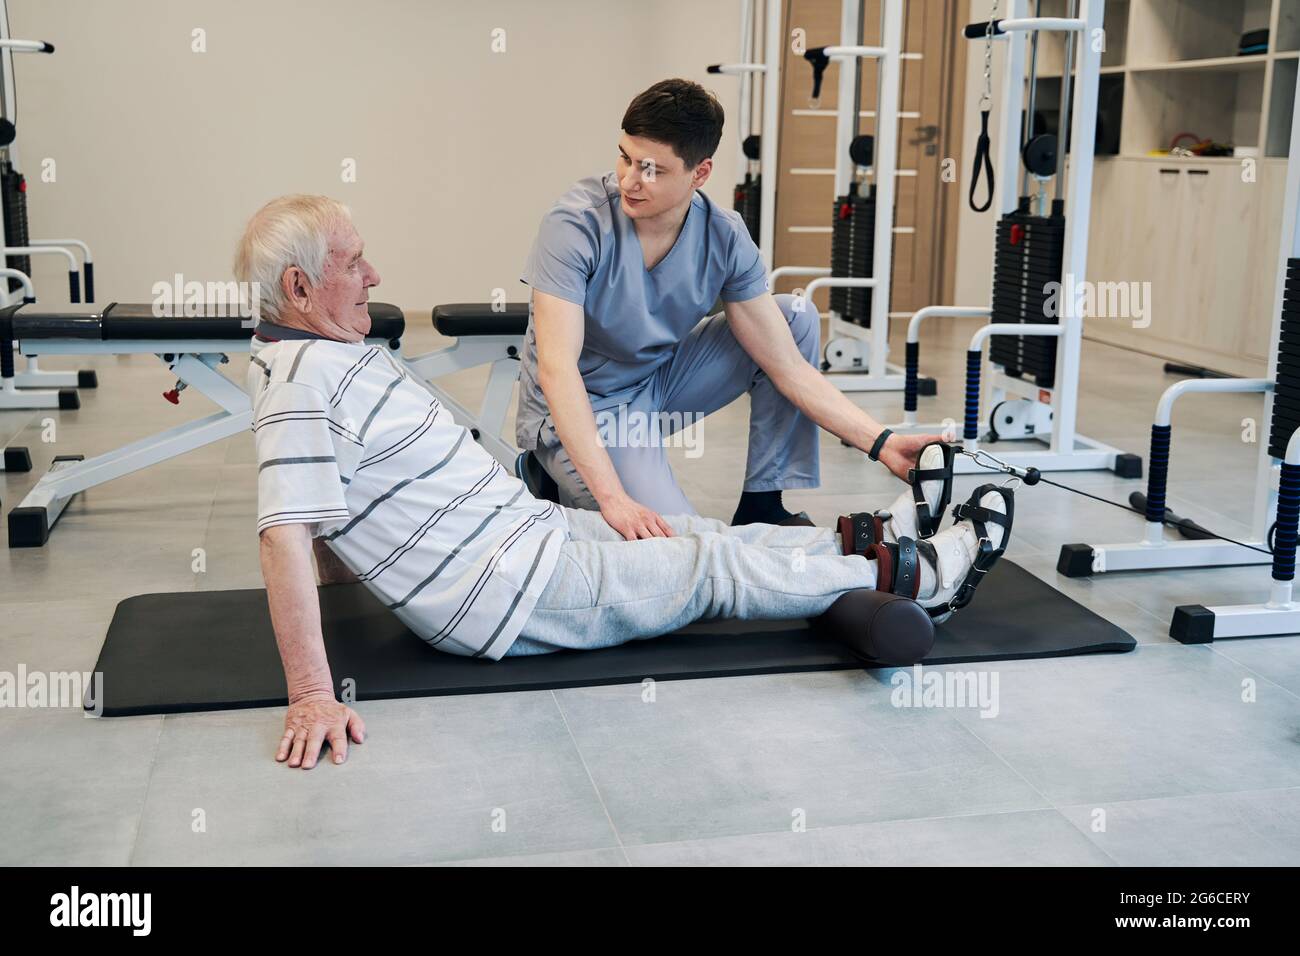 Rentner legt seine Beine auf die Rolle, während Orthopäde Anweisungen gibt Stockfoto